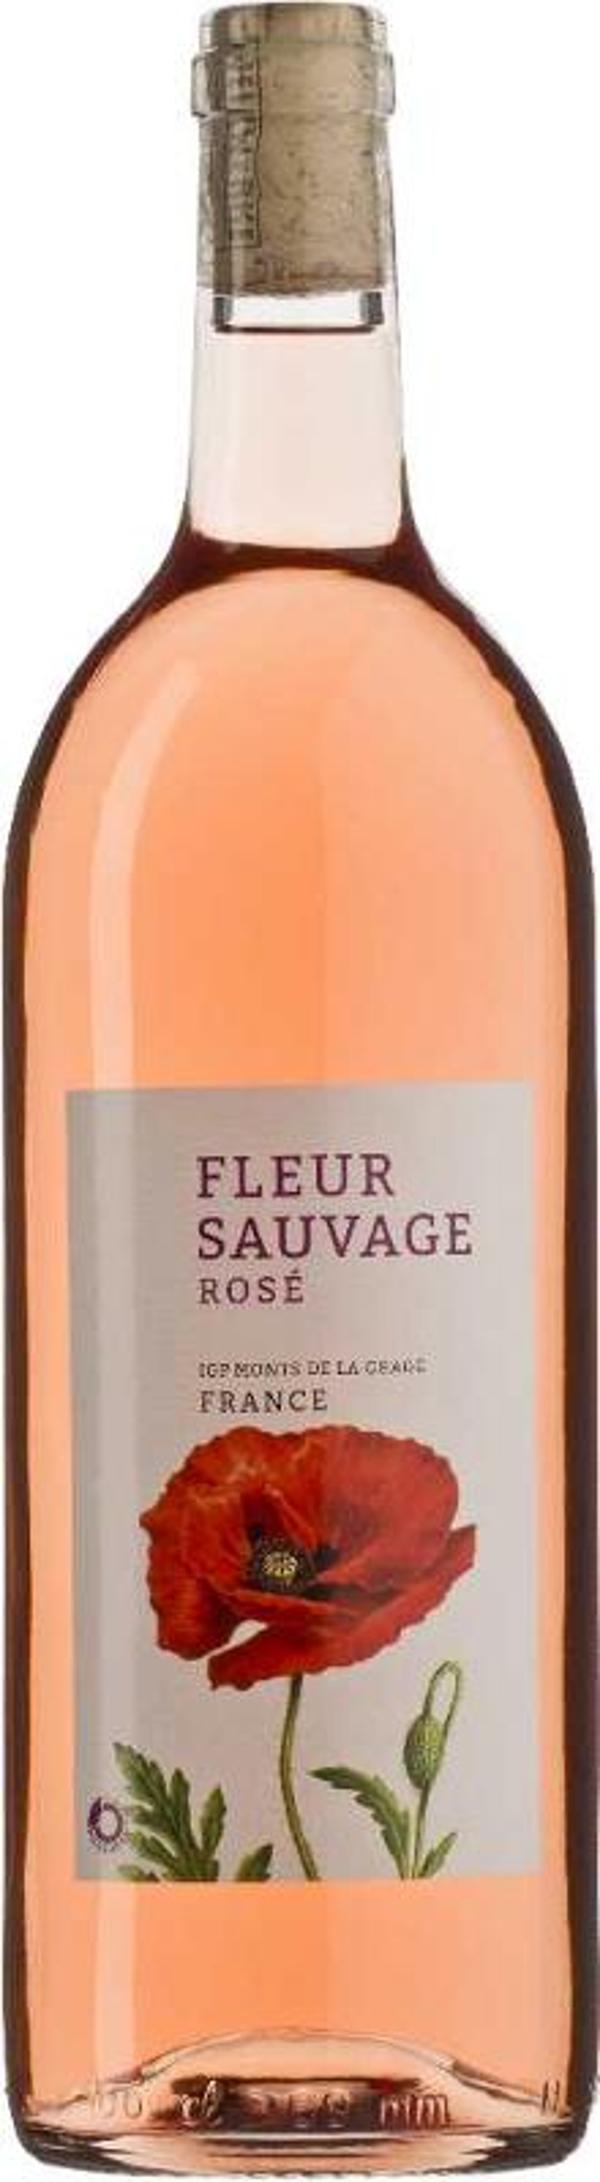 Produktfoto zu Fleur Sauvage Rosé